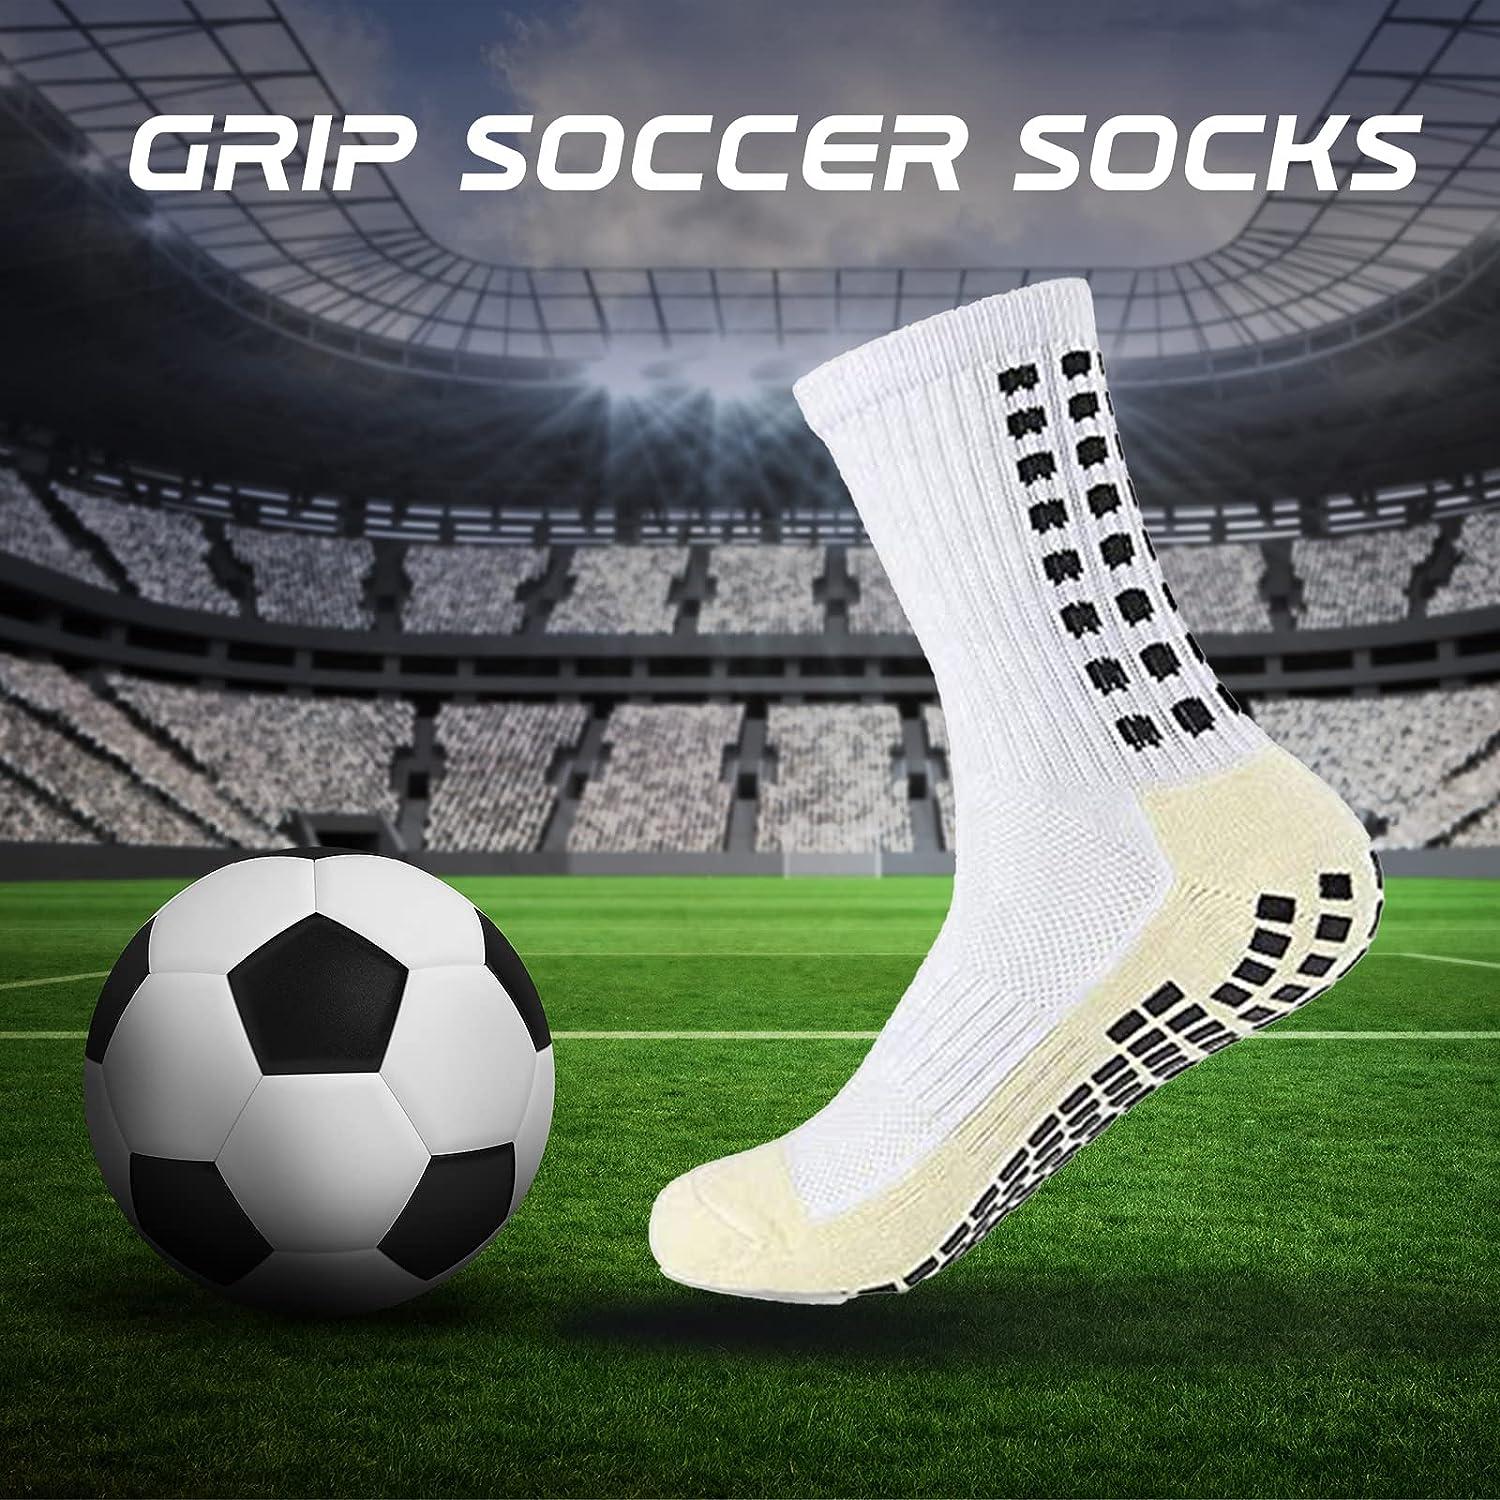 4 Pairs Anti Slip Soccer Socks/Non Slipping Basketball Socks/Sport Athletic  Grip Socks